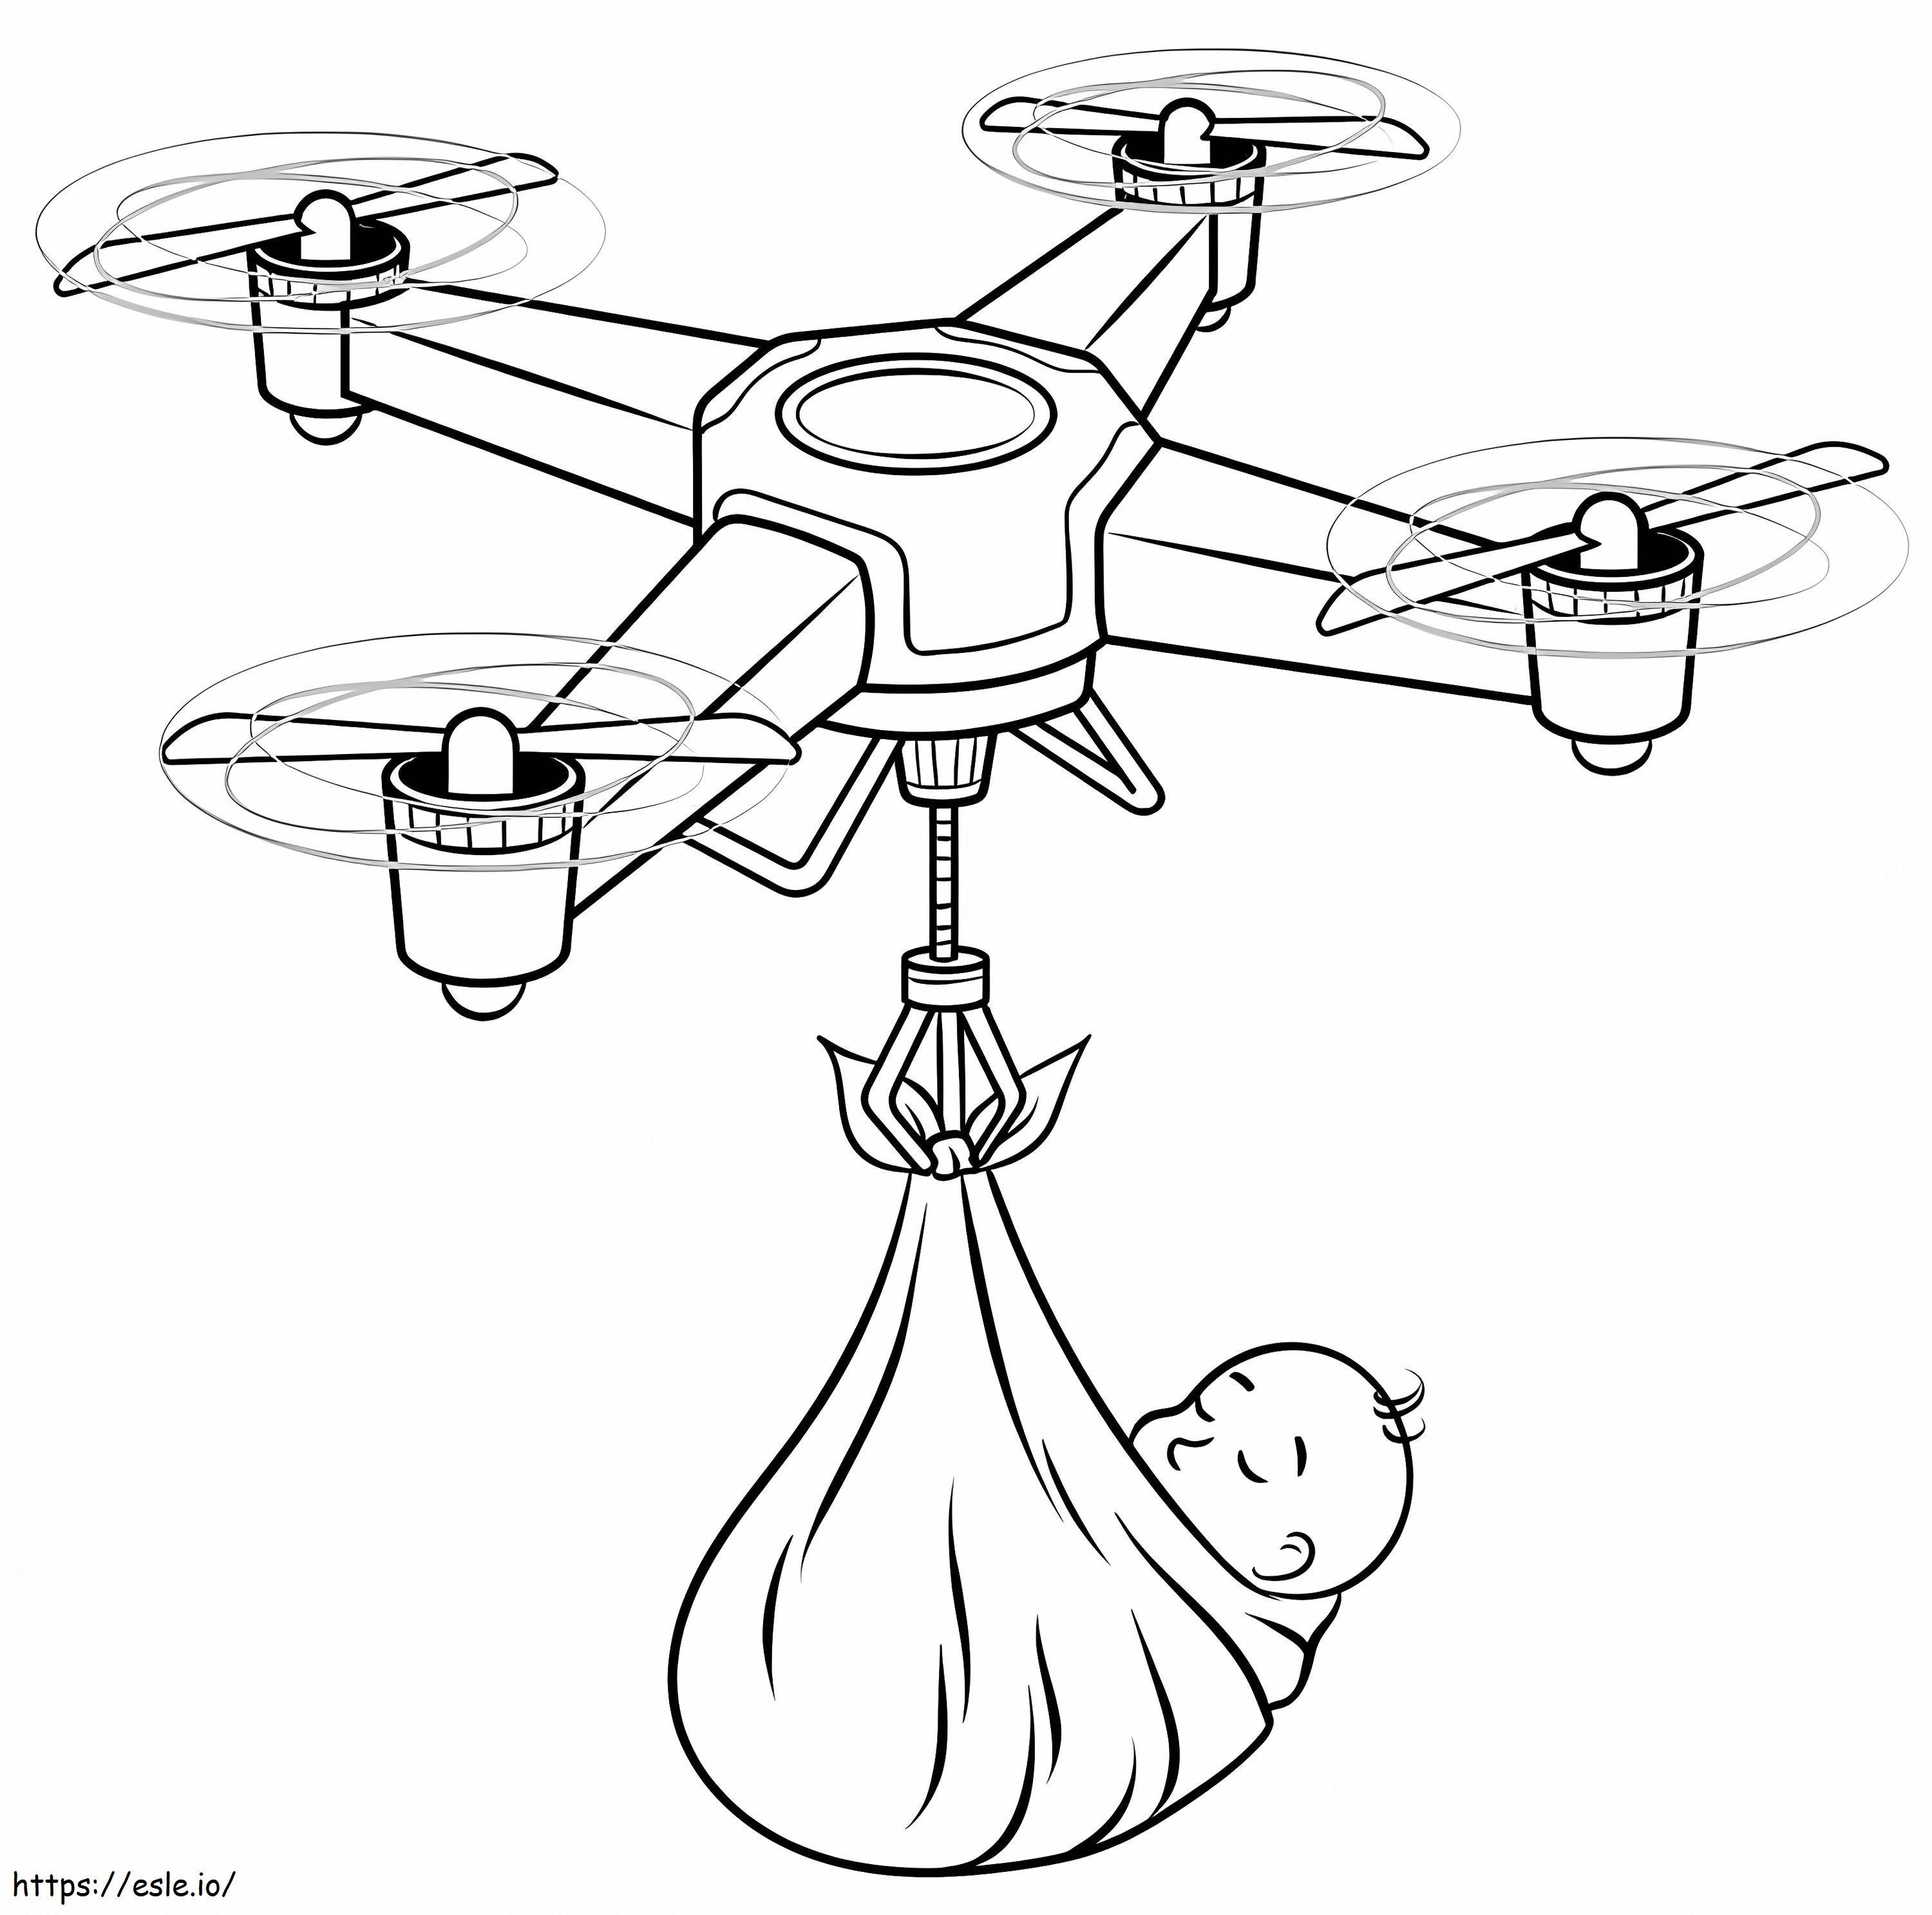 Drohne und Baby ausmalbilder